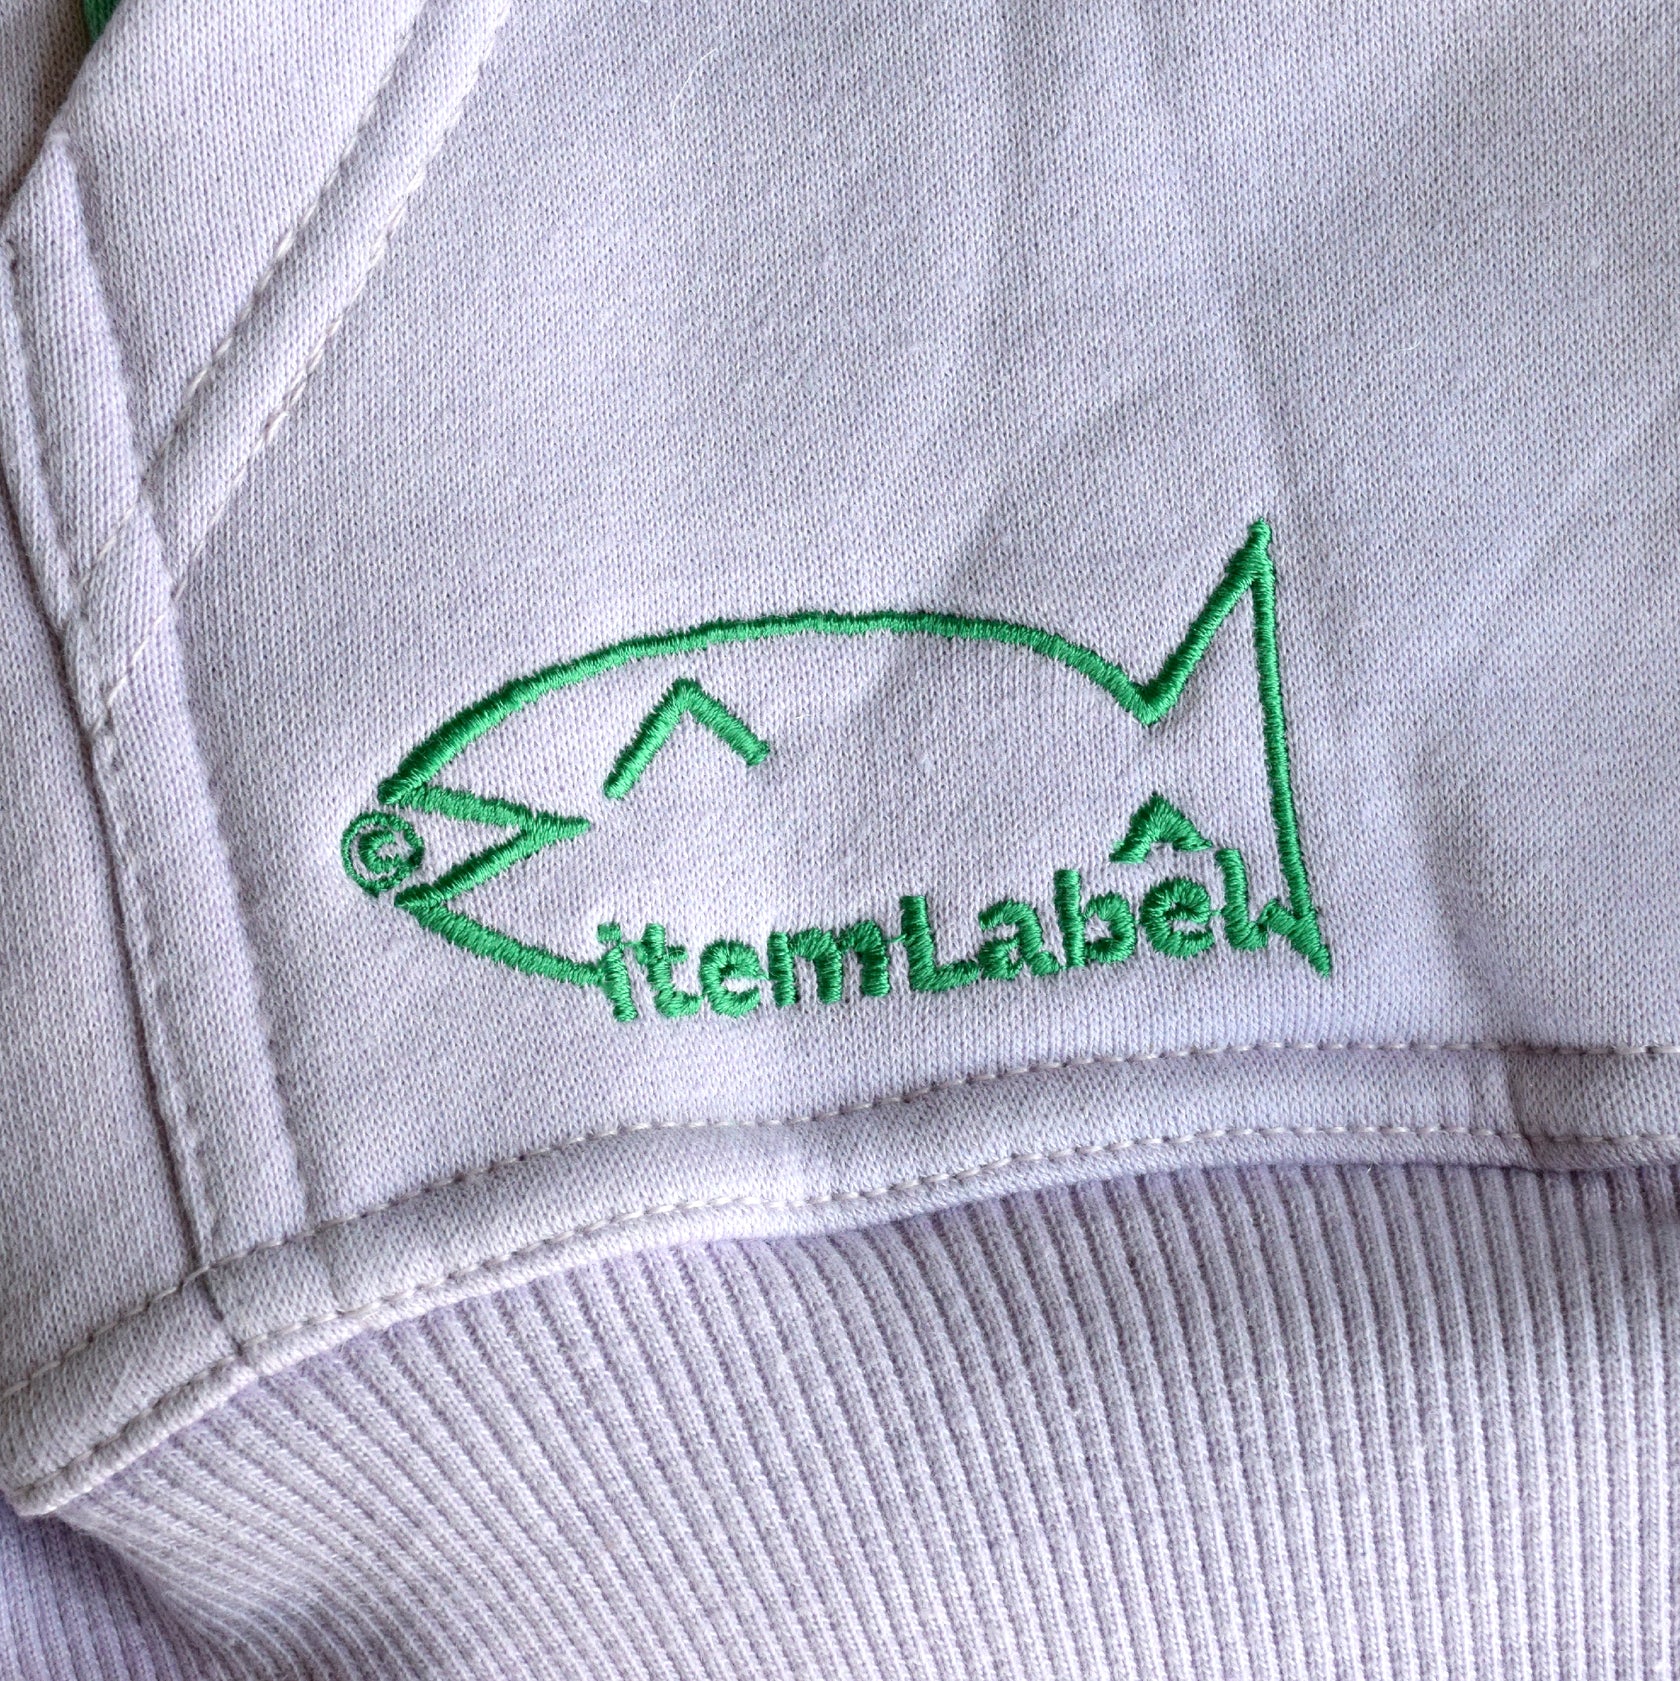 itemLabel – Item Label